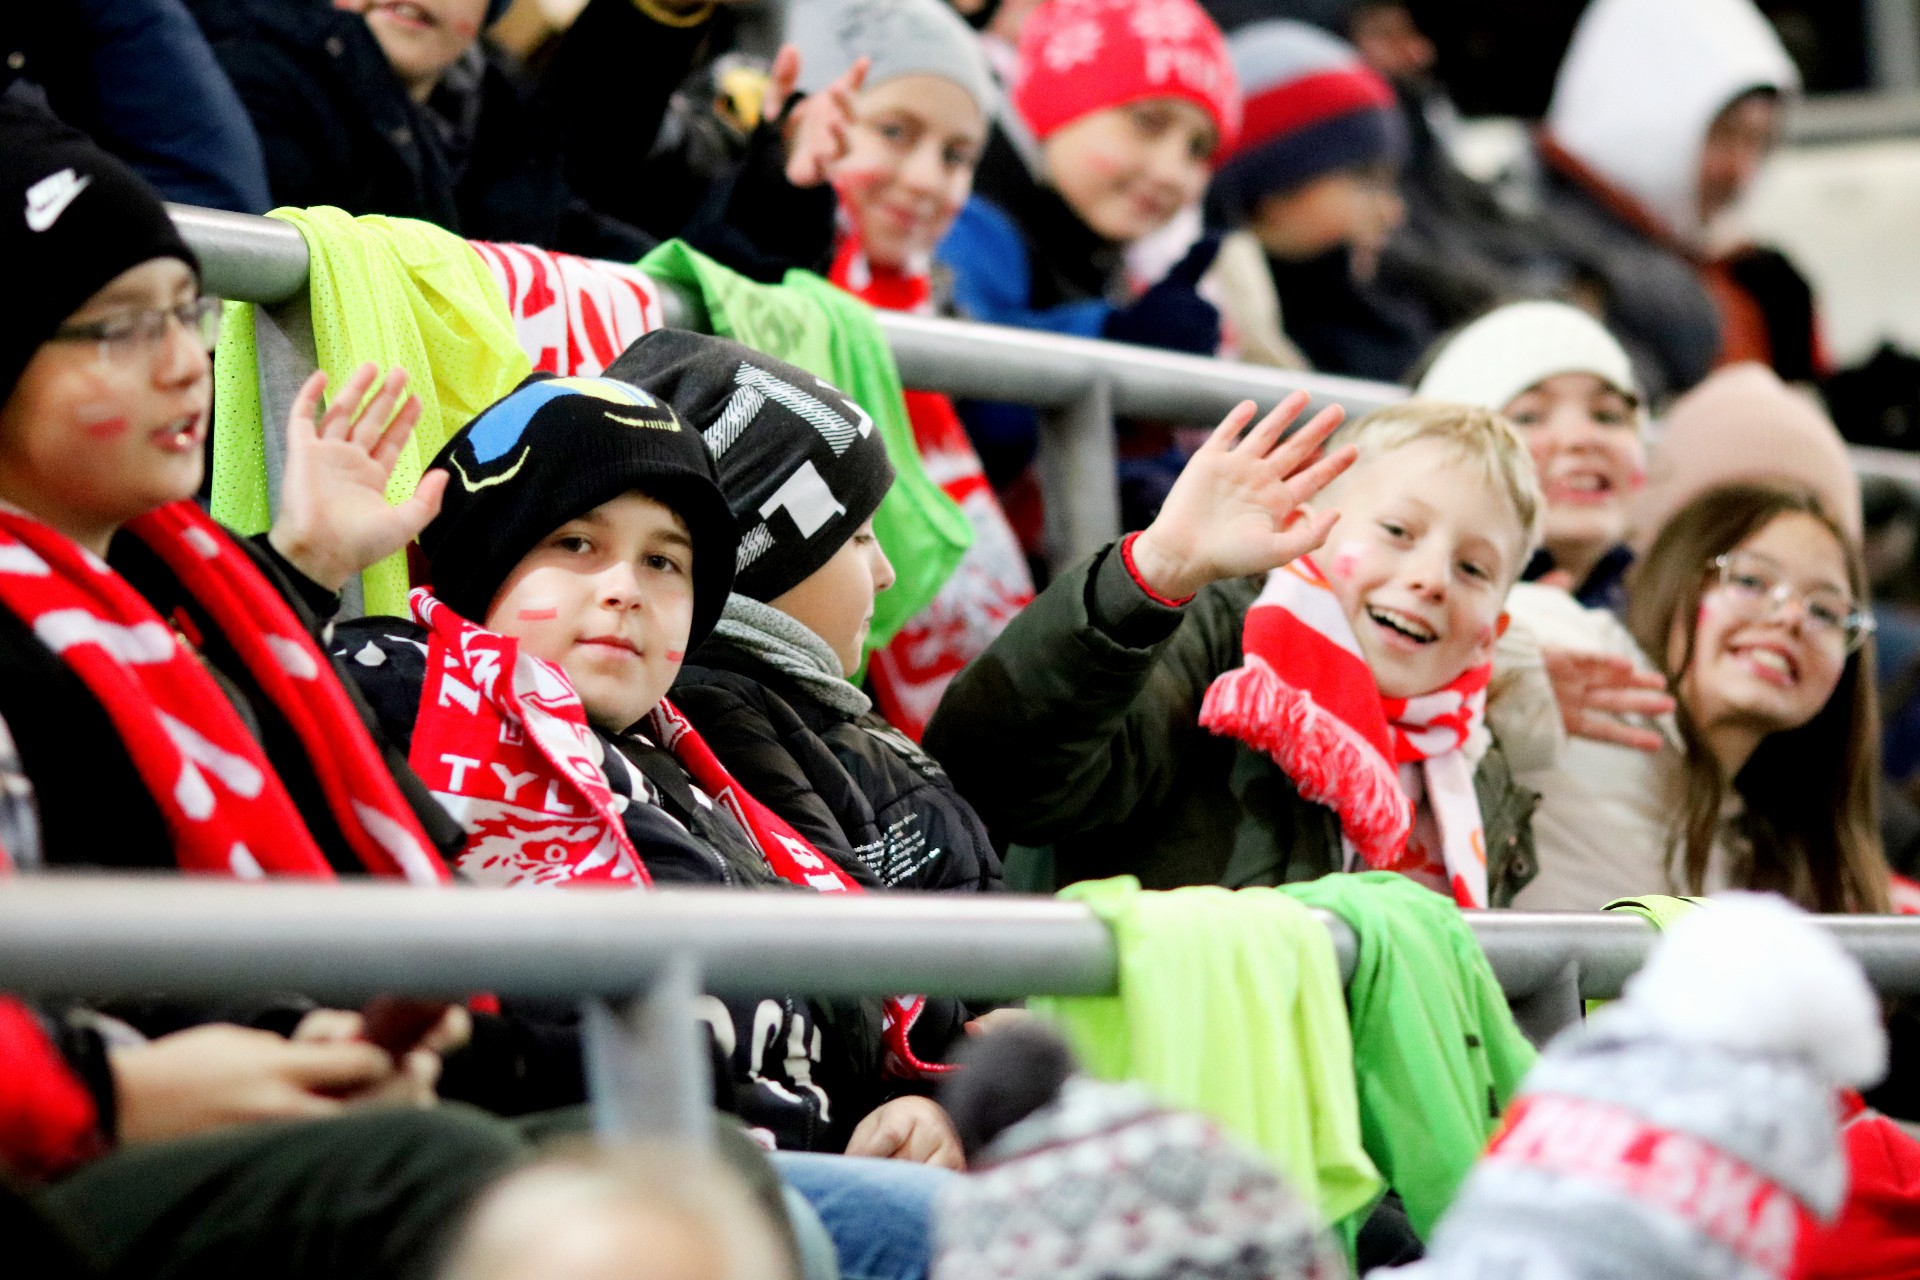 Kolorowo ubrane dzieci siedzą na trybunie stadionu, mają biało-czerwone szaliki, jeden chłopiec macha ręką.